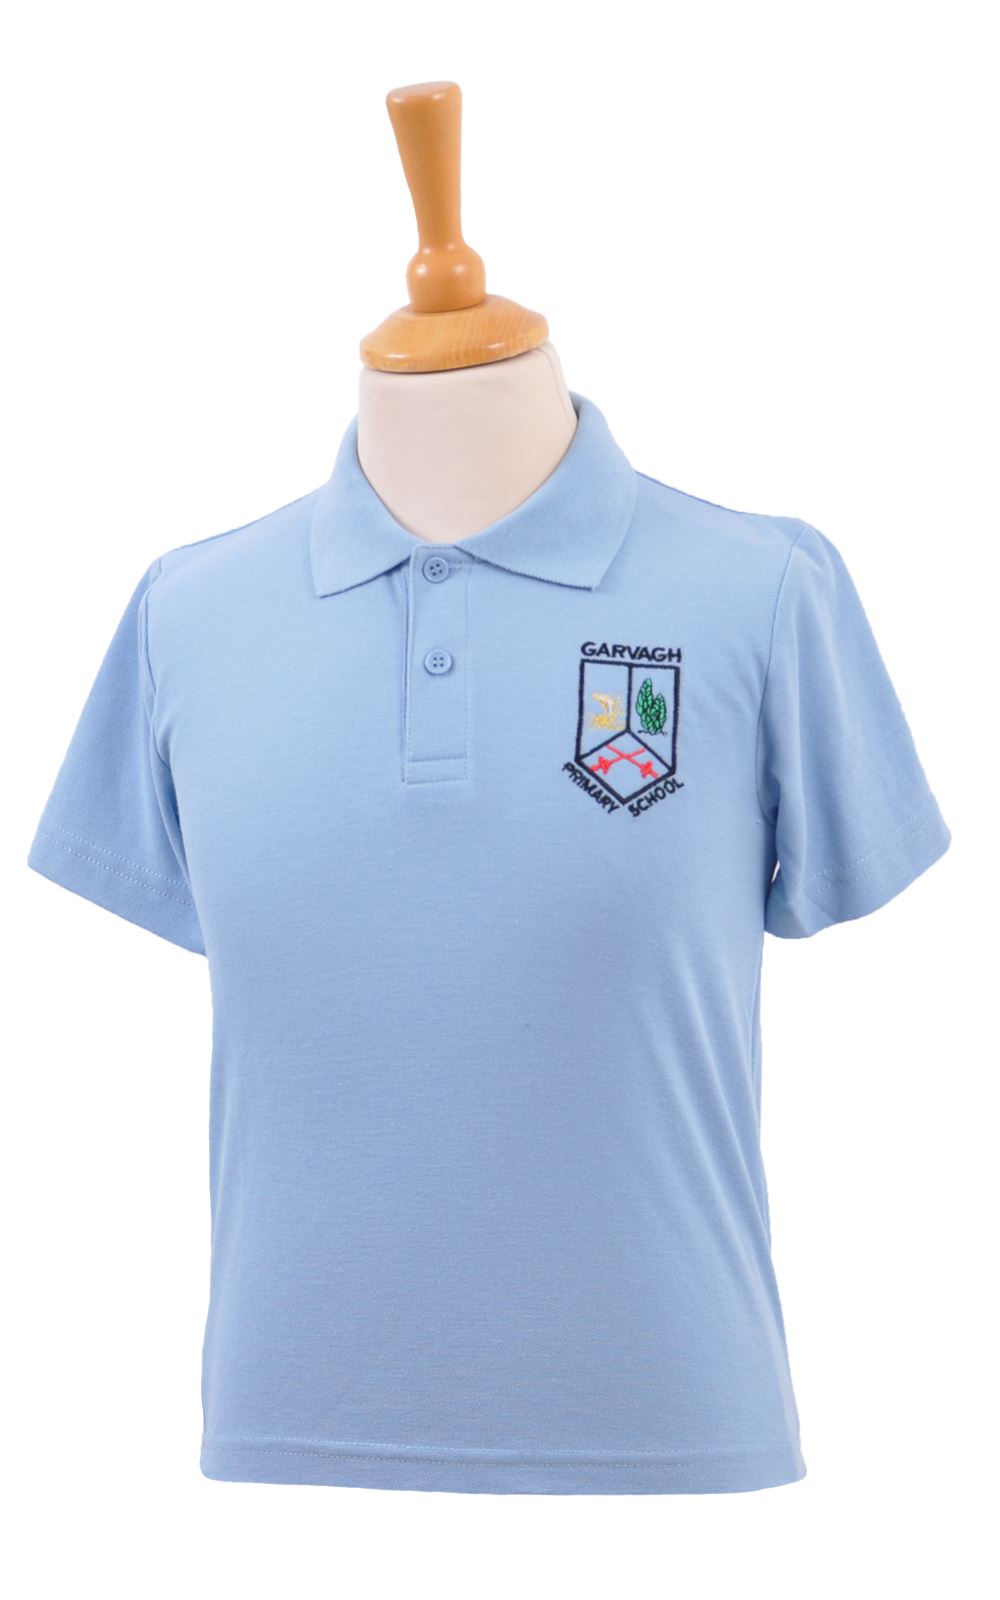 S&T Moore. Garvagh PS Polo Shirt - Woodbank